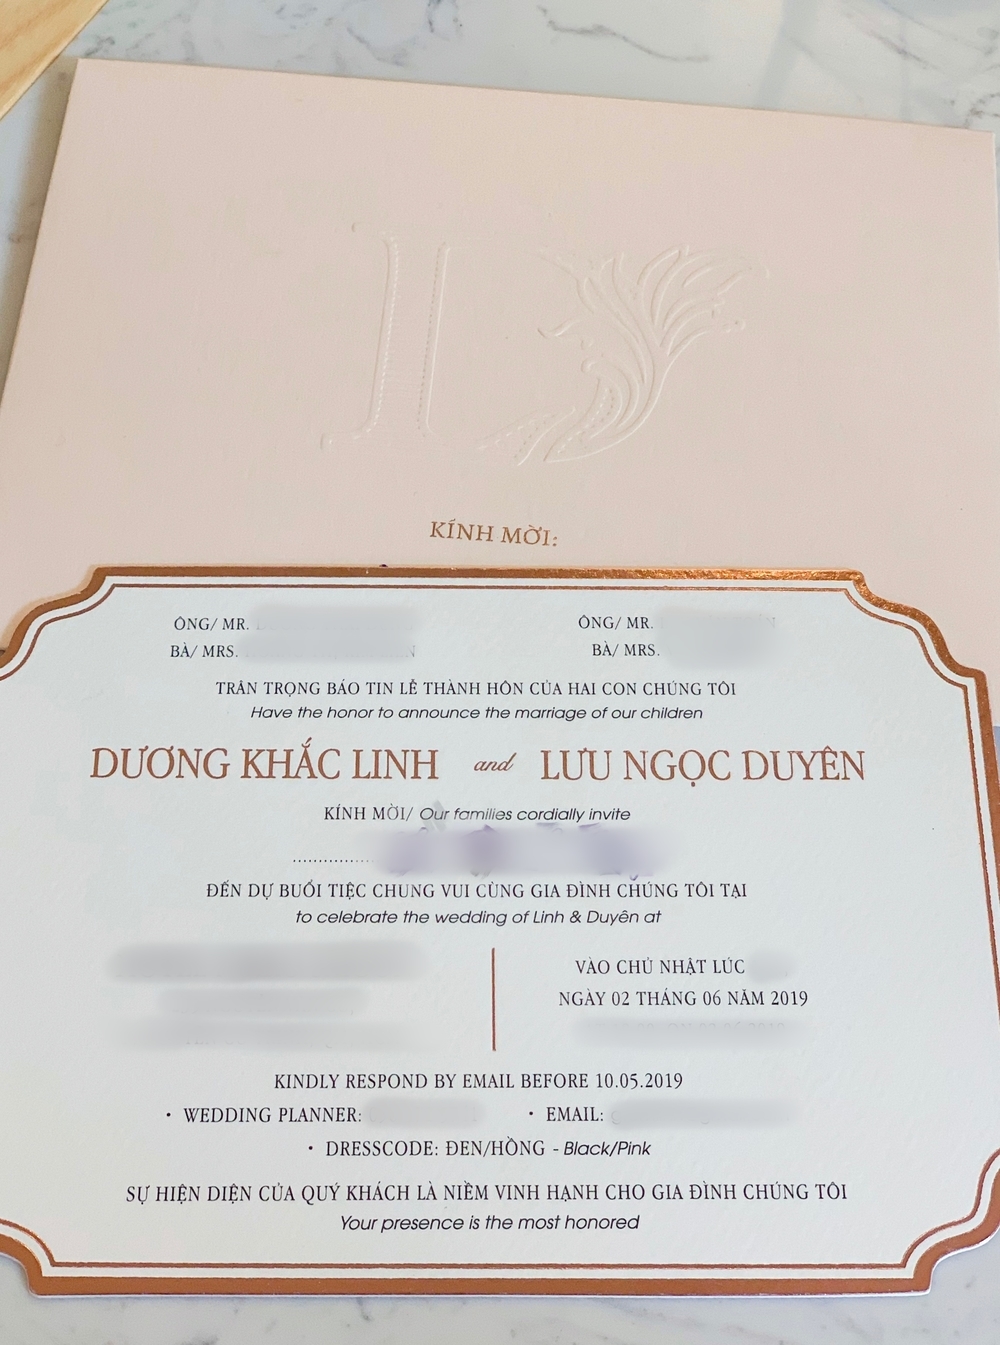  
Ảnh thiệp cưới của Dương Khắc Linh và Sara Lưu. Theo hình ảnh ghi nhận, đám cưới sẽ diễn ra vào ngày 2/6/2019. 